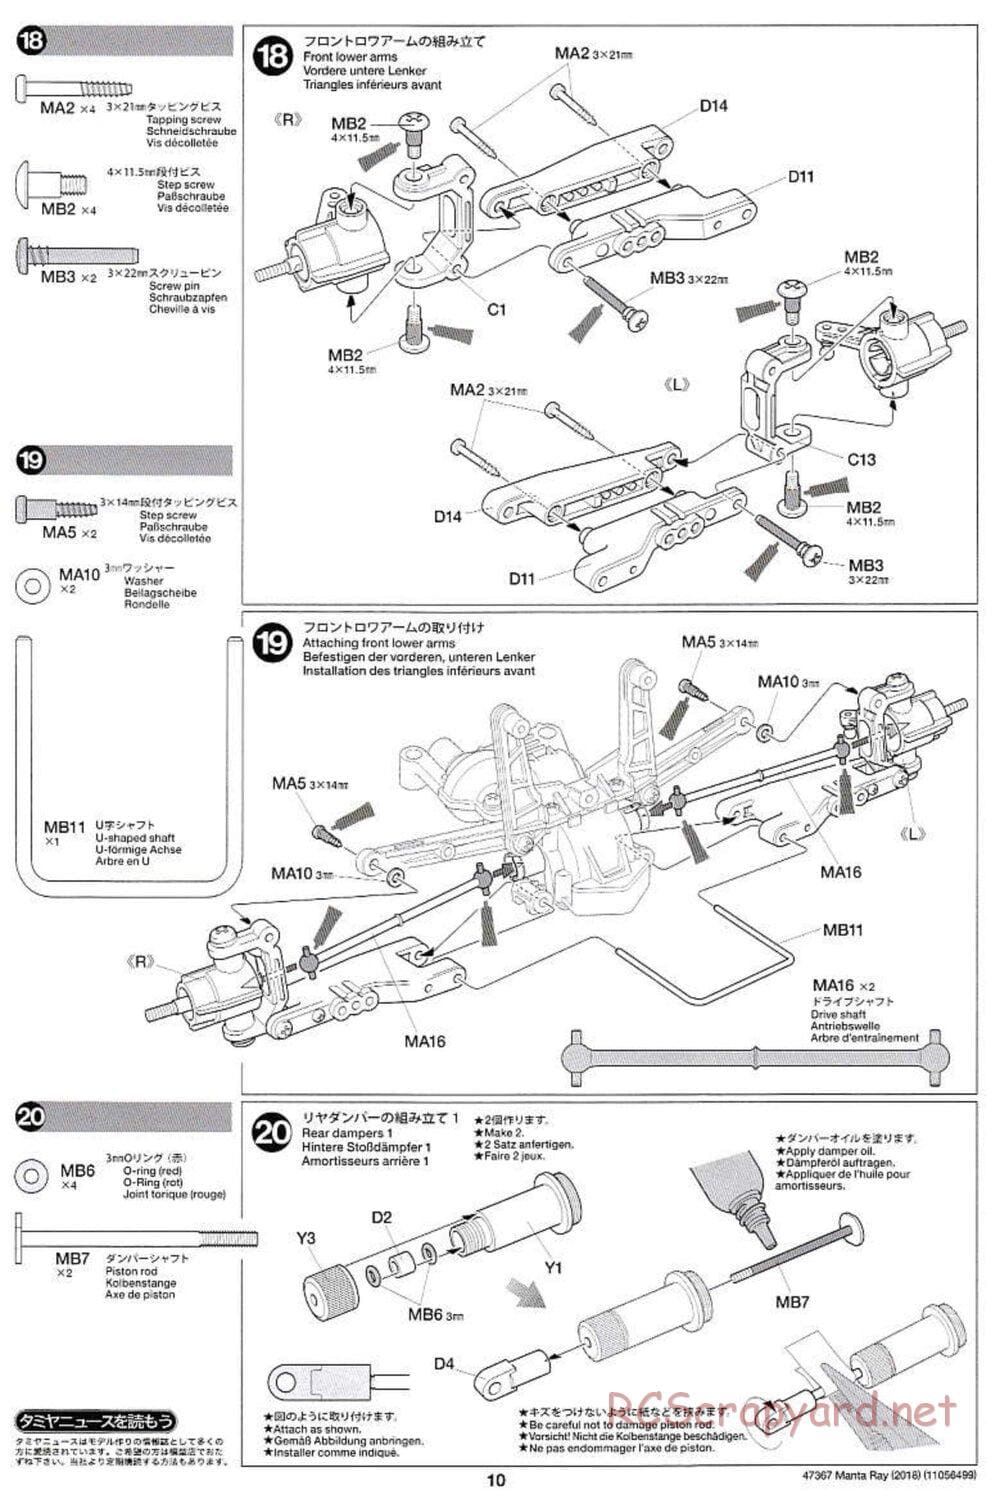 Tamiya - Manta Ray 2018 - DF-01 Chassis - Manual - Page 10